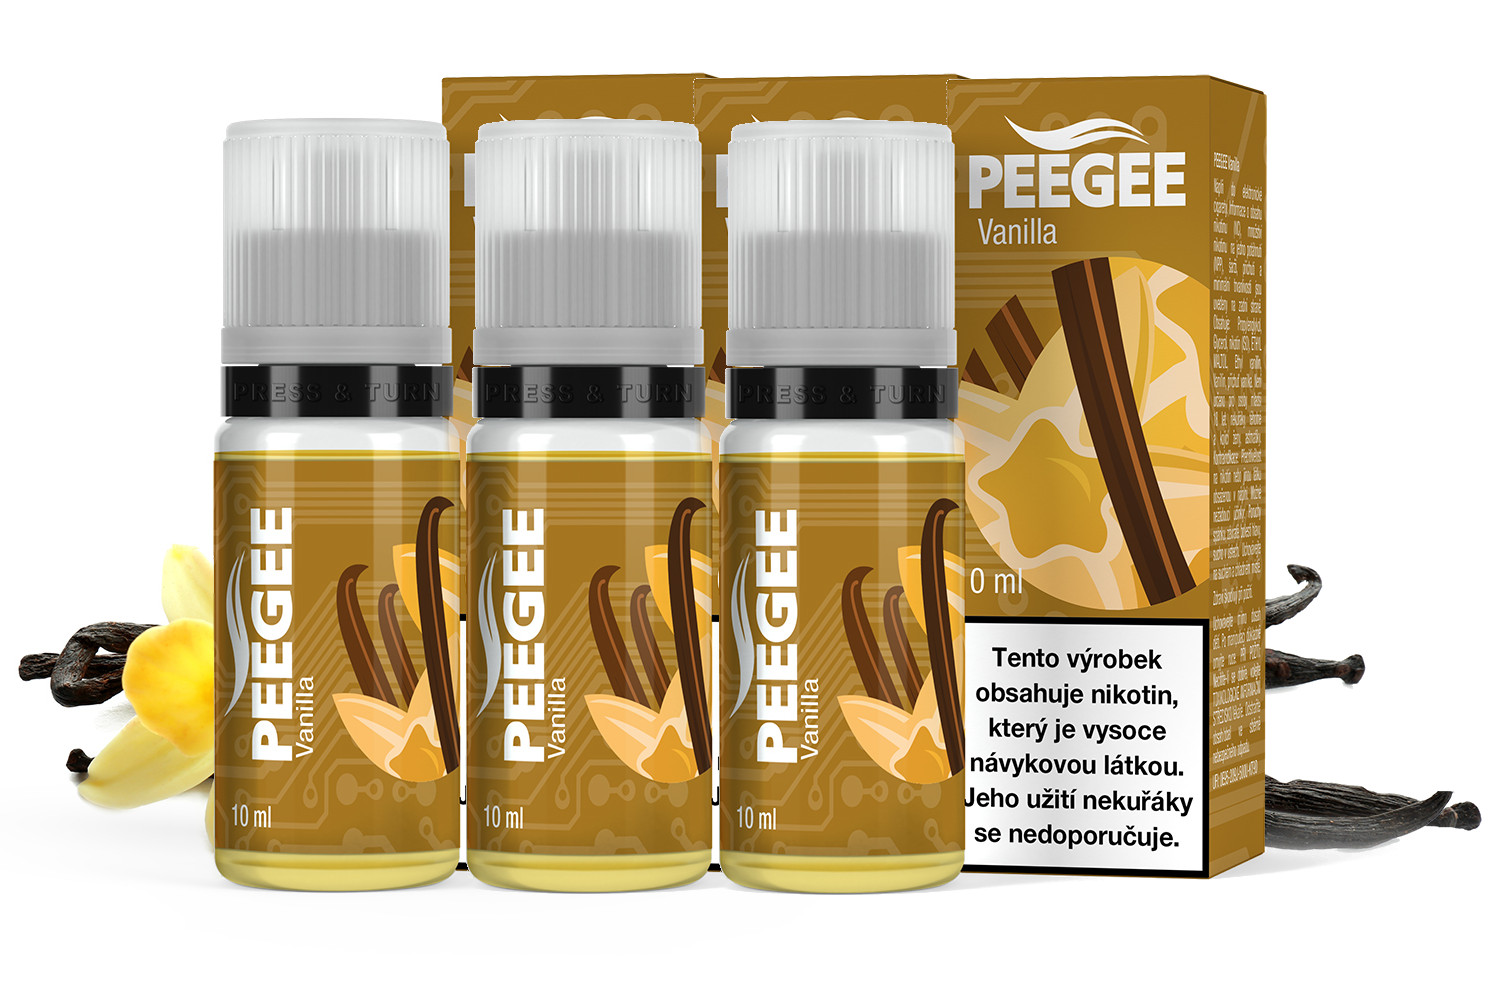 PEEGEE - Vanilka (Vanilla) 3x10ml Obsah nikotinu: 18mg